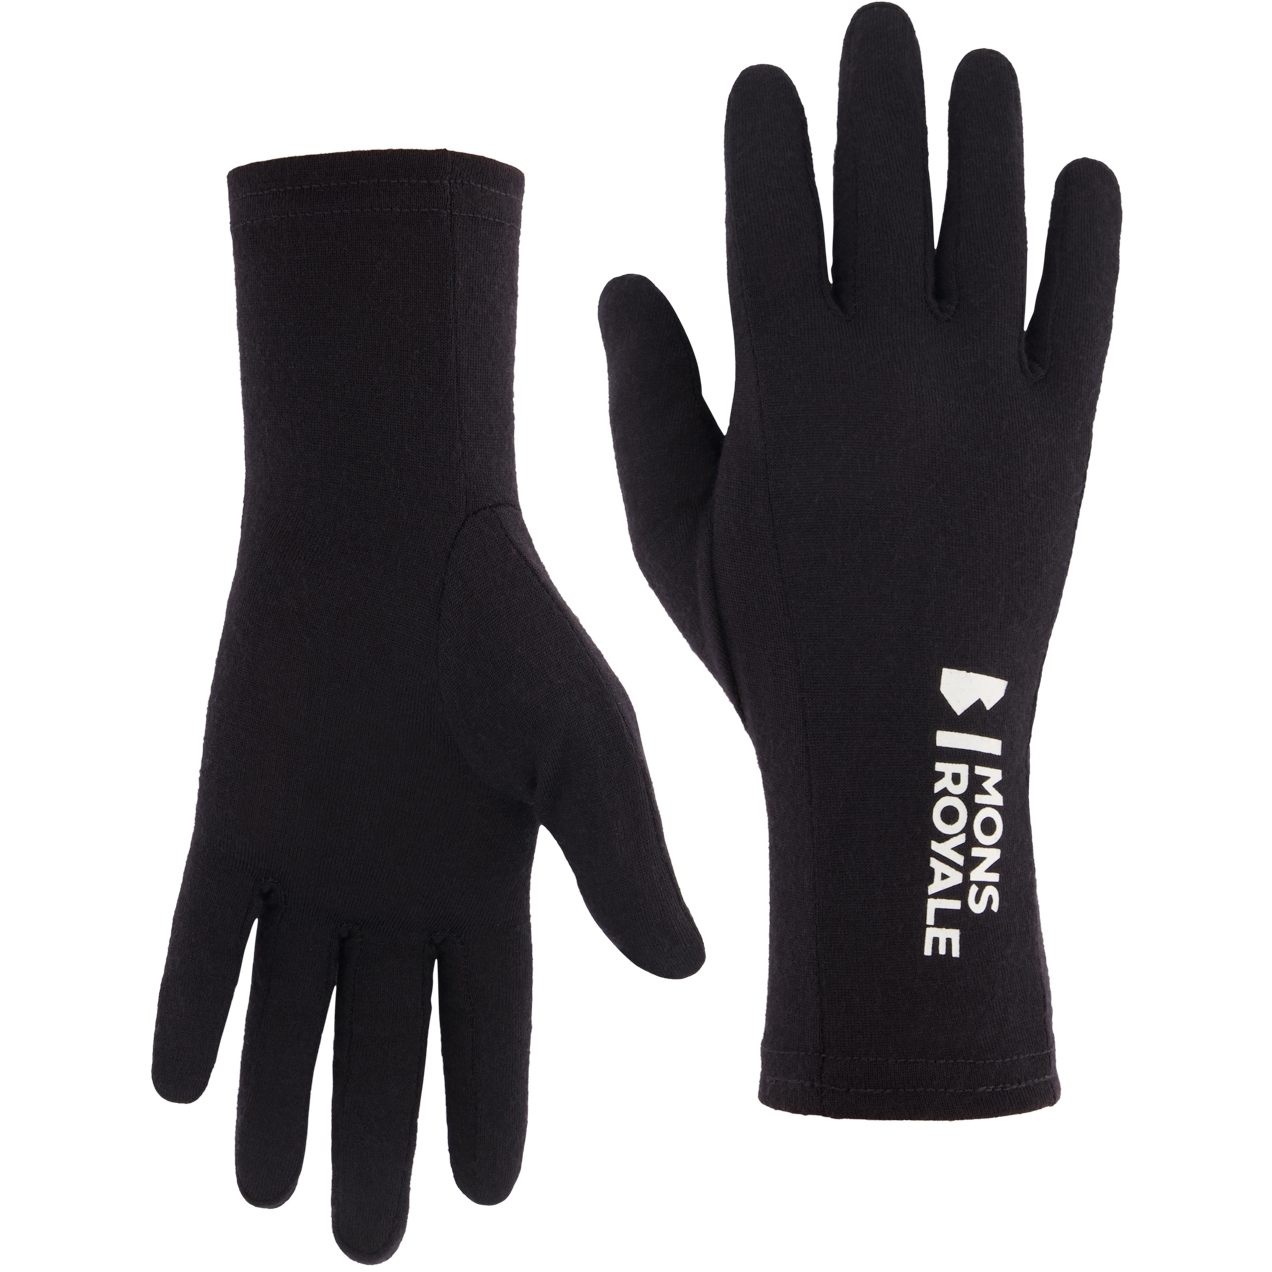 Productfoto van Mons Royale Volta Liner Handschoenen - zwart